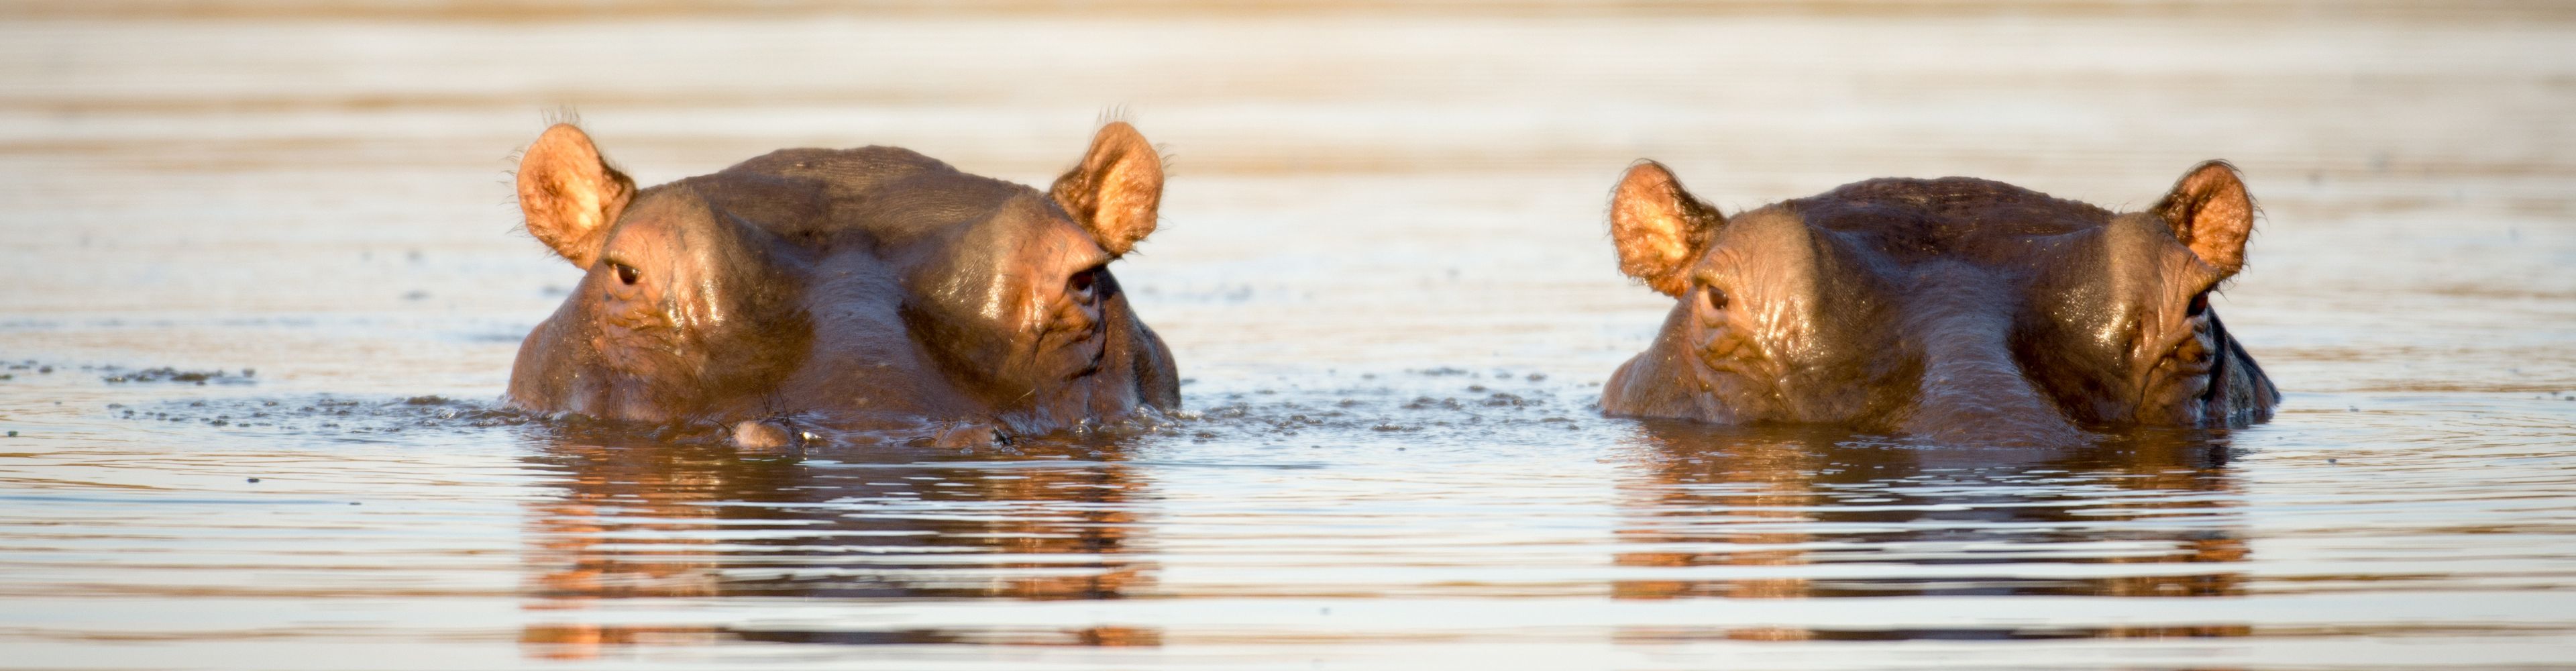 Zwei untergetauchte Nilpferde im Sonnenuntergang. es schauen nur die Augen und Ohren aus dem Wasser.